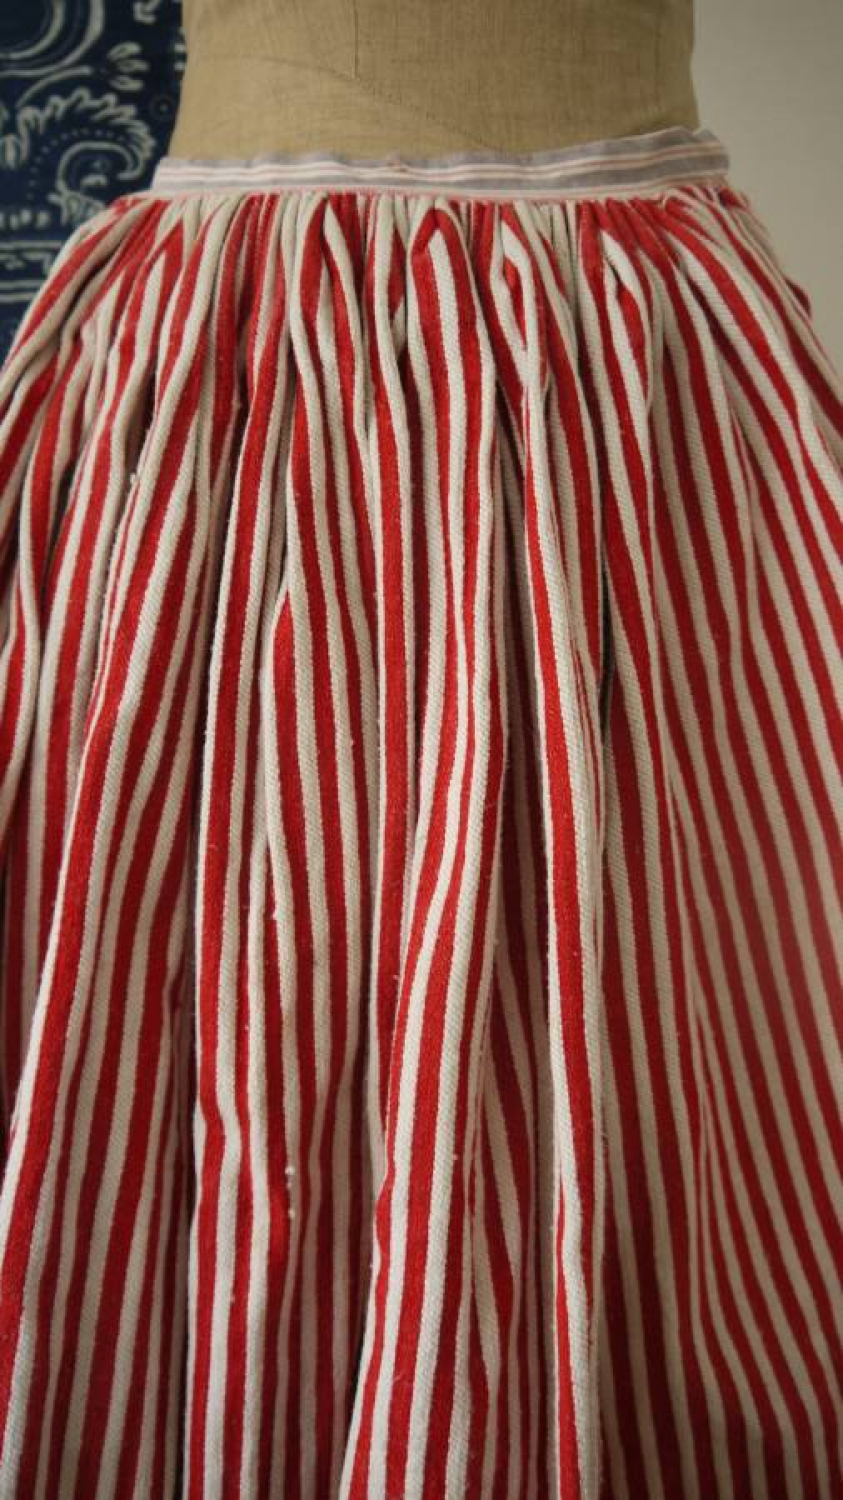 Red Striped Petticoat